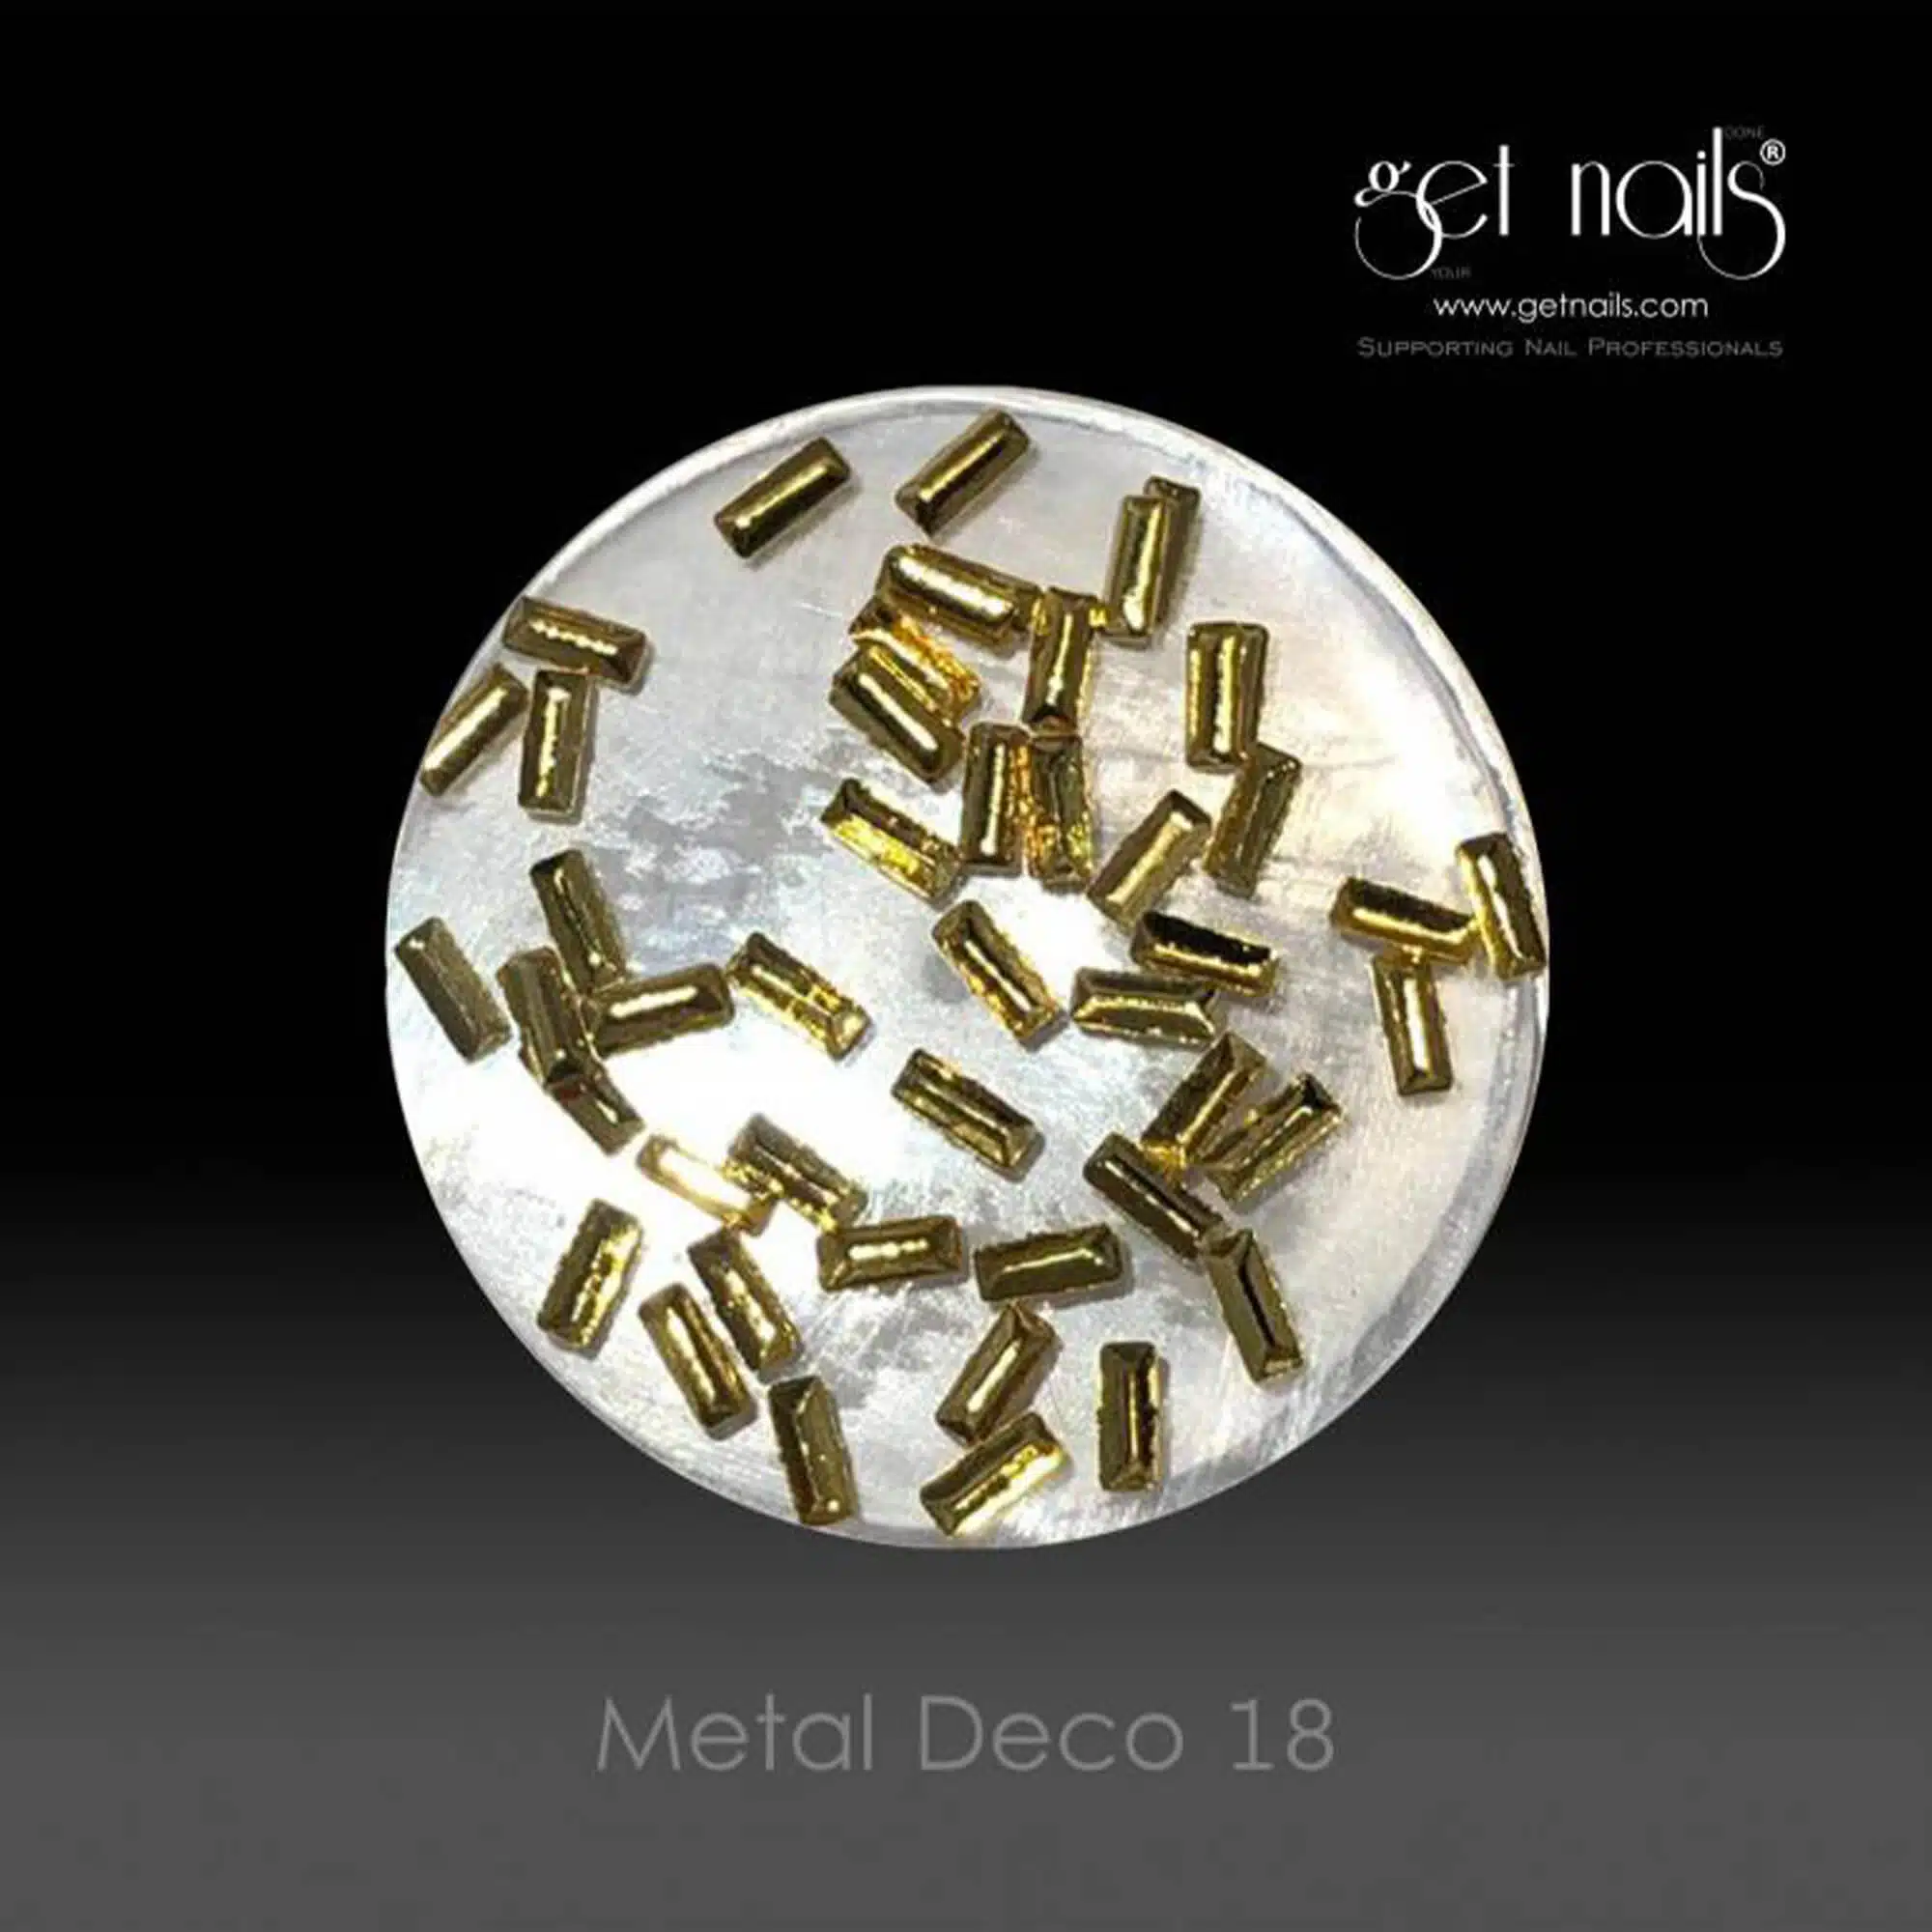 Get Nails Austria - Metal Deco 18 Gold, 50 pcs